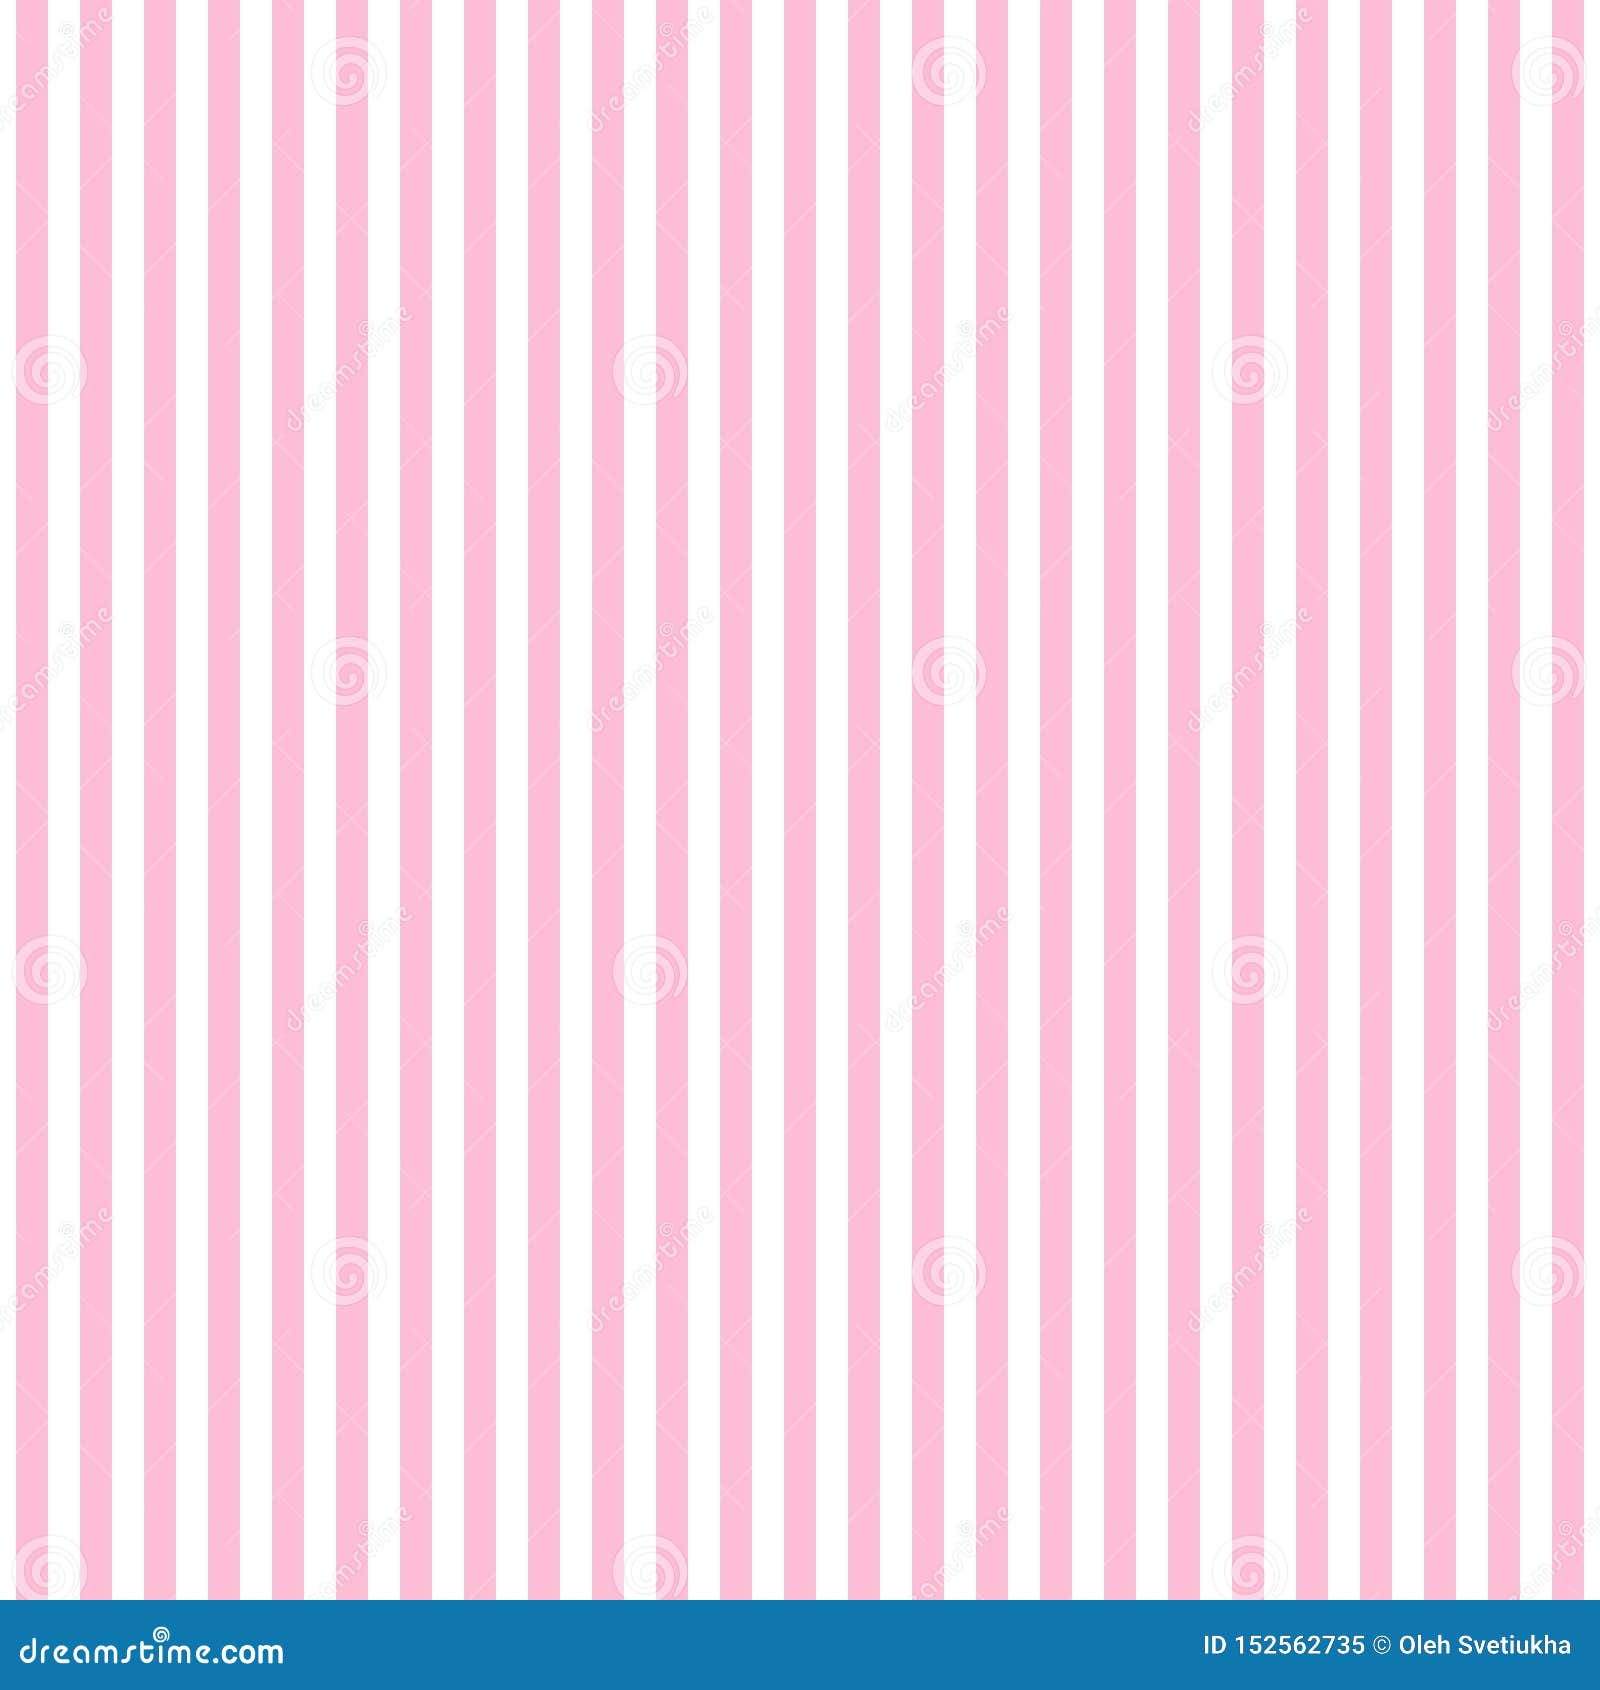 999+ Background pink lines Năng động, đầy sức sống